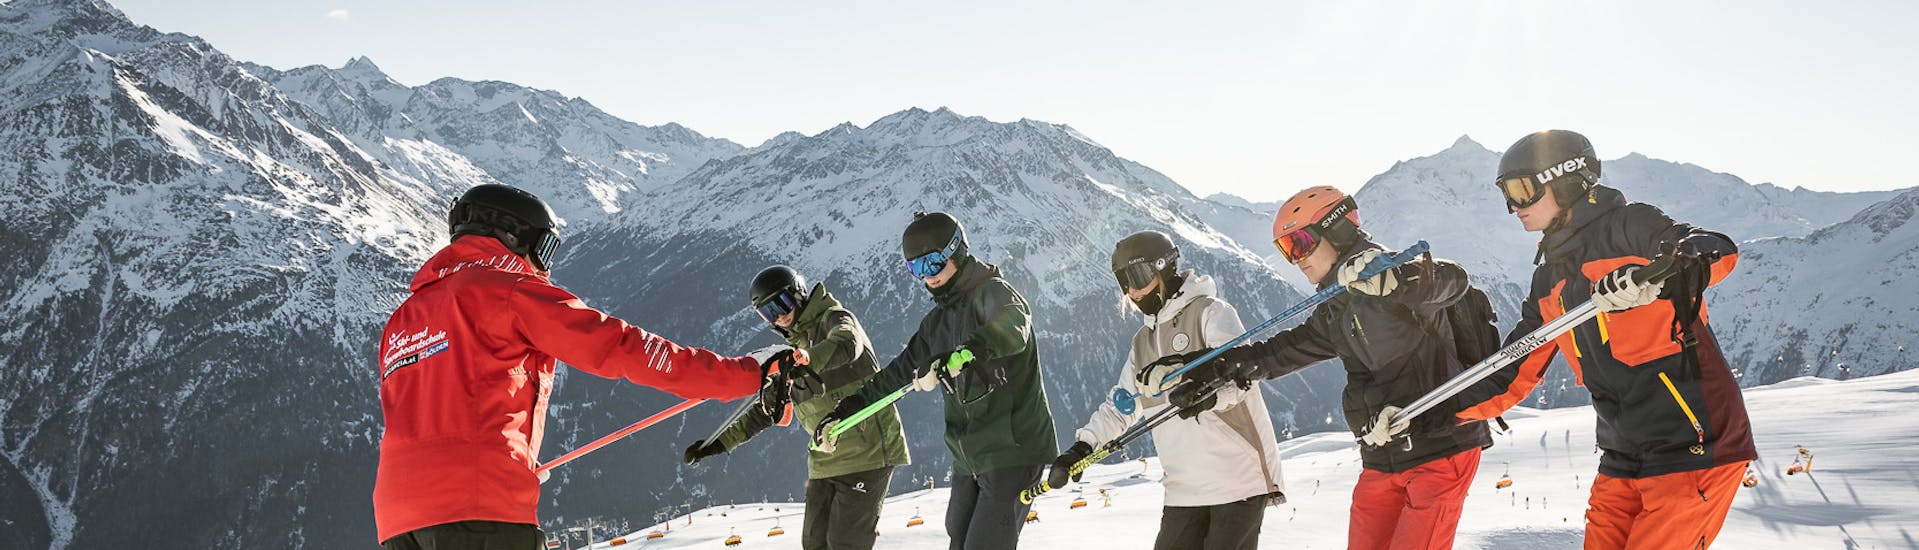 Clases de esquí para adultos (a partir de 16 años) para todos los niveles.